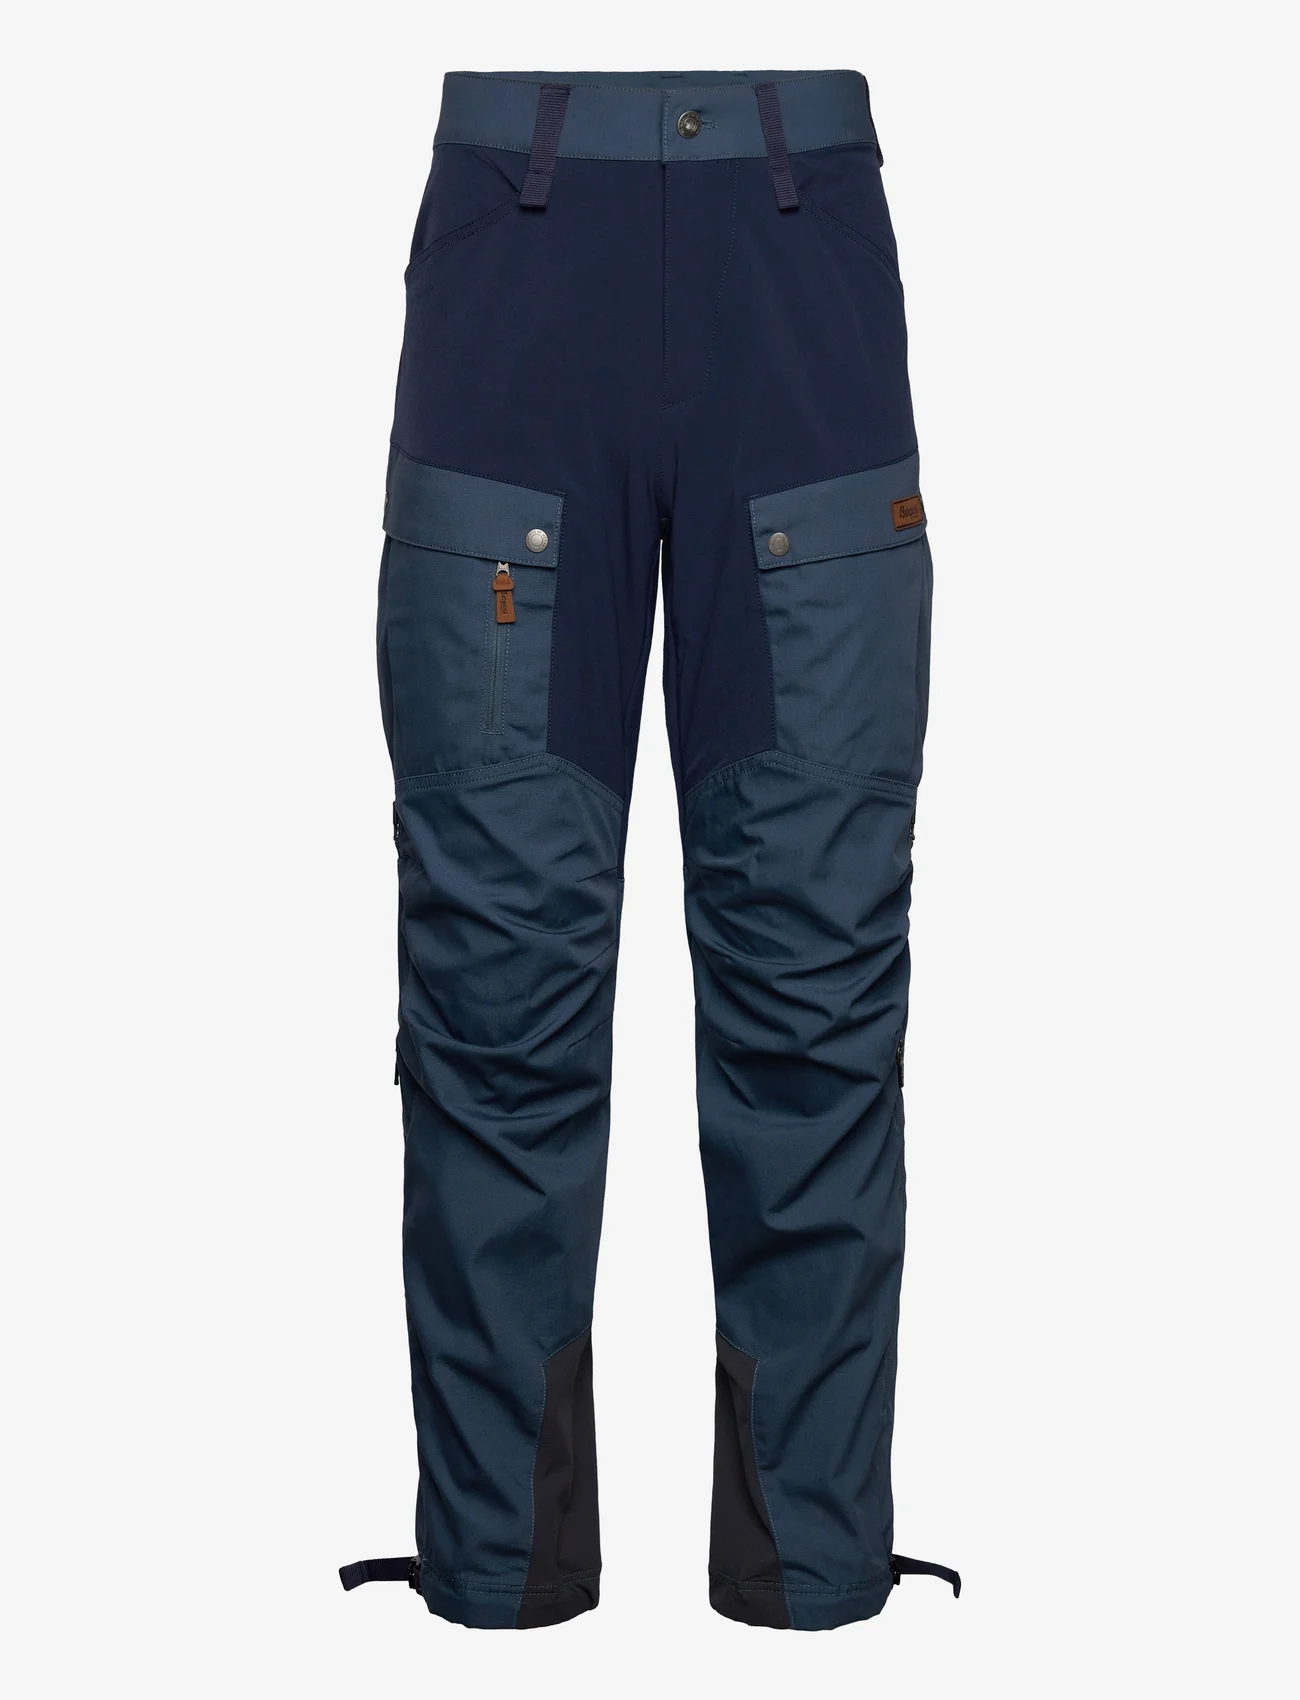 Bergans - Nordmarka Favor Outdoor Pants Men - joggingbukser - orion blue/navy blue - 0